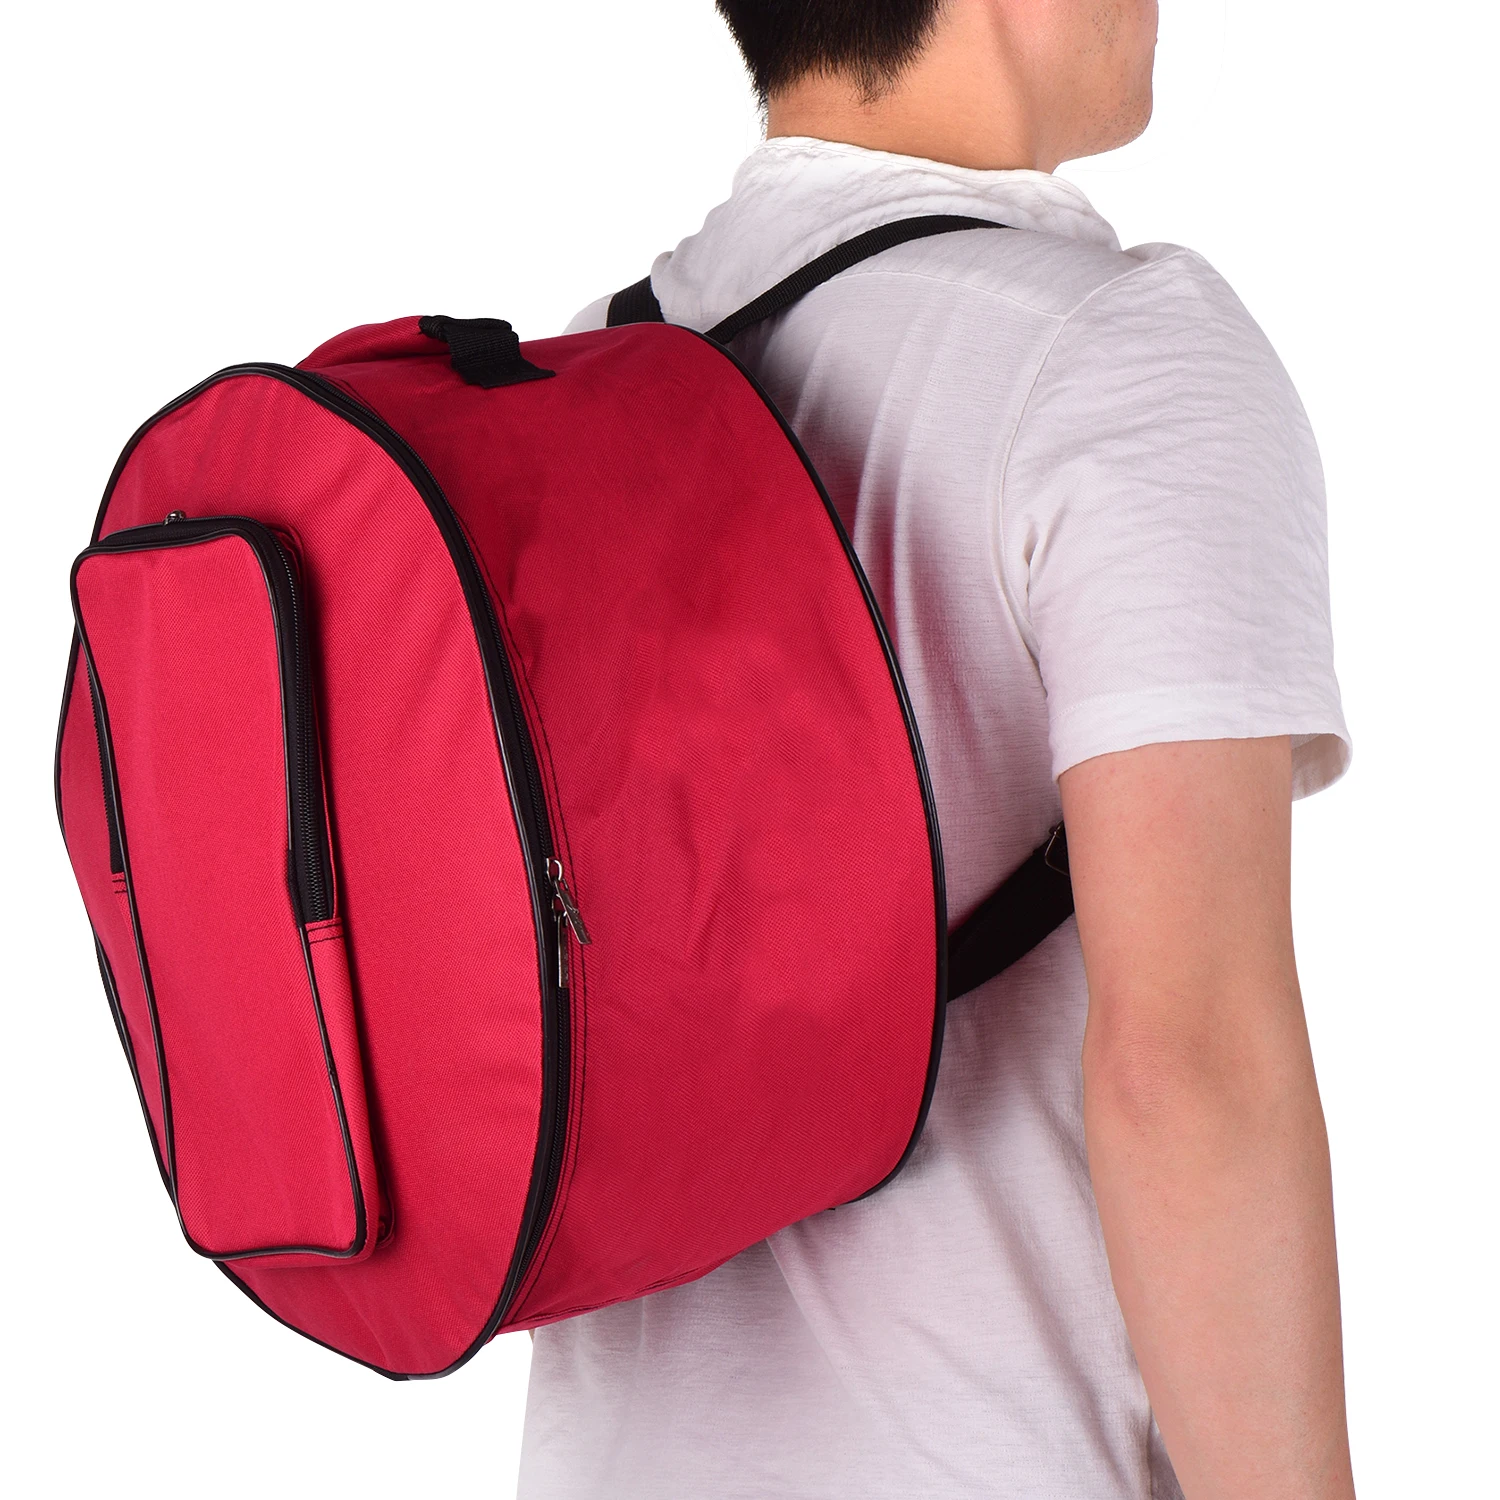 Компактный размер, сумка-барабан, чехол-рюкзак с плечевым ремнем, внешние карманы, ударные детали